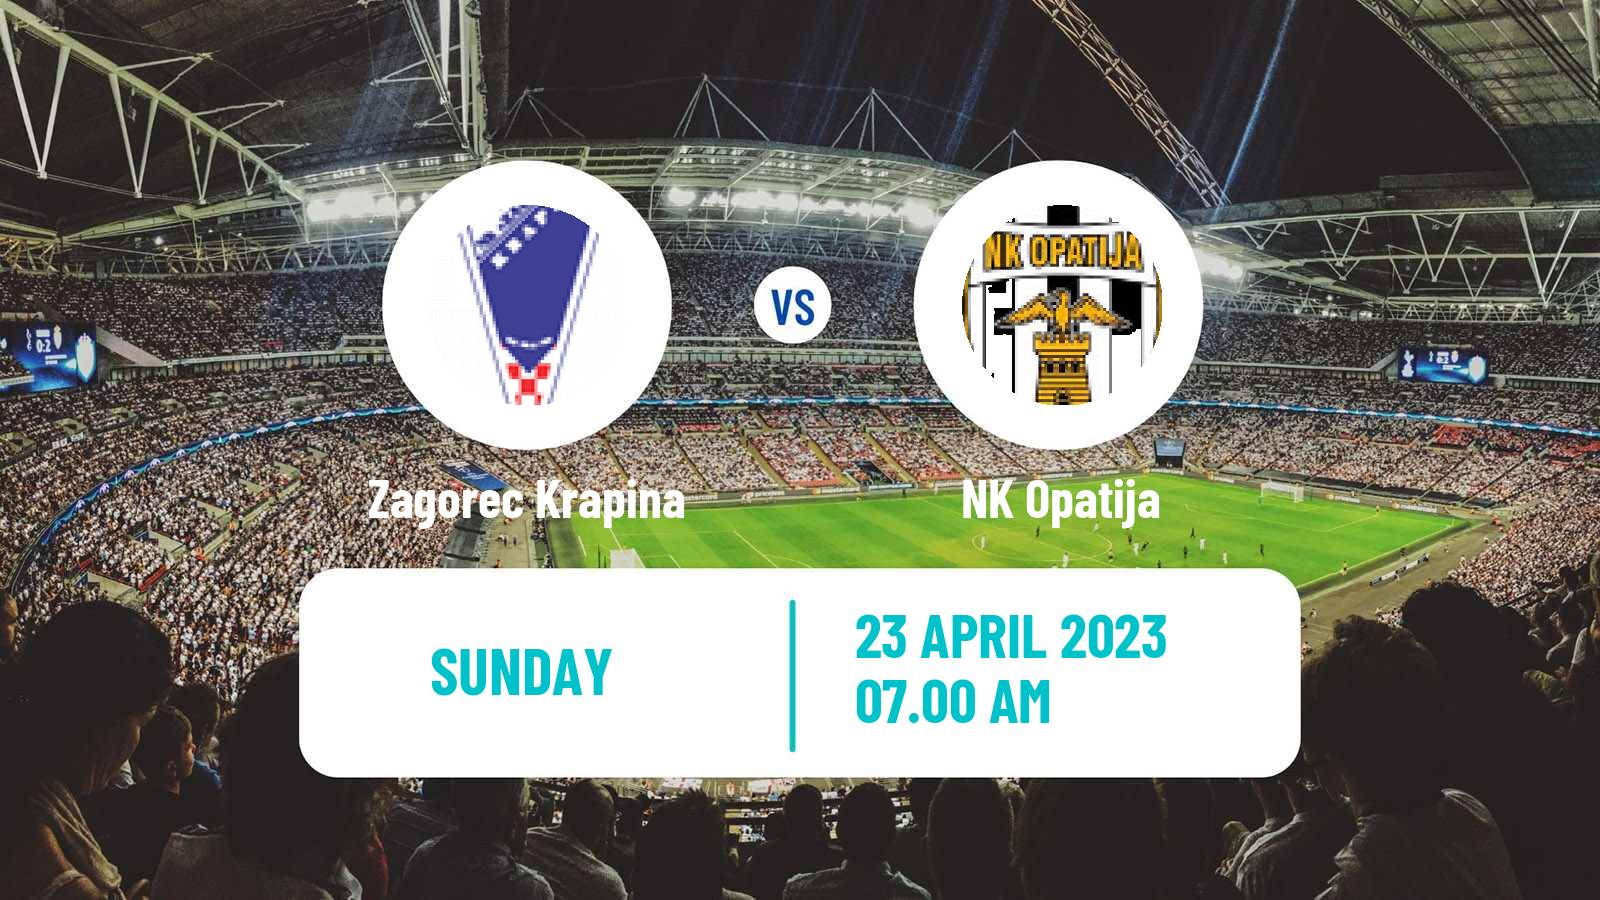 Soccer Croatian Druga NL Zagorec Krapina - Opatija